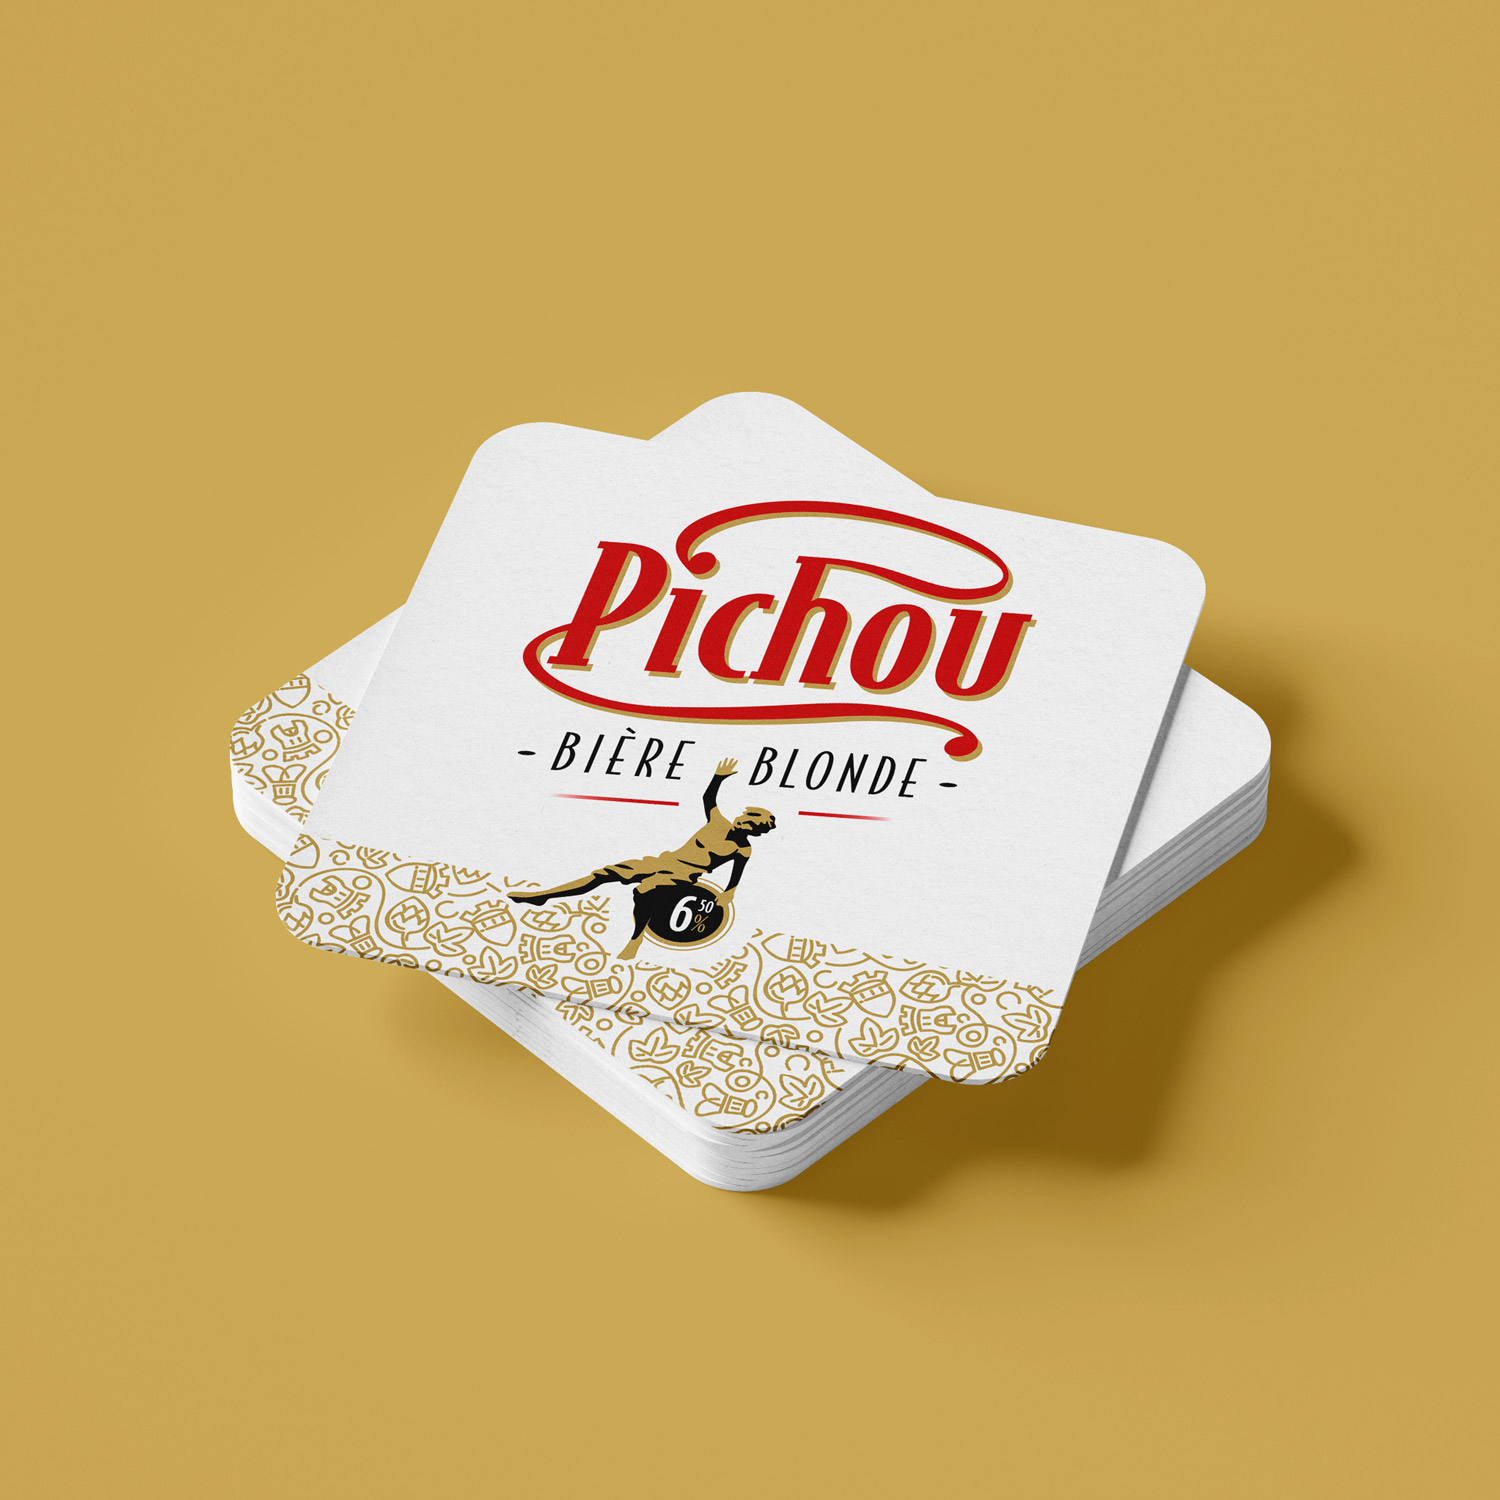 Pichou, Bière Blonde – Labelpages